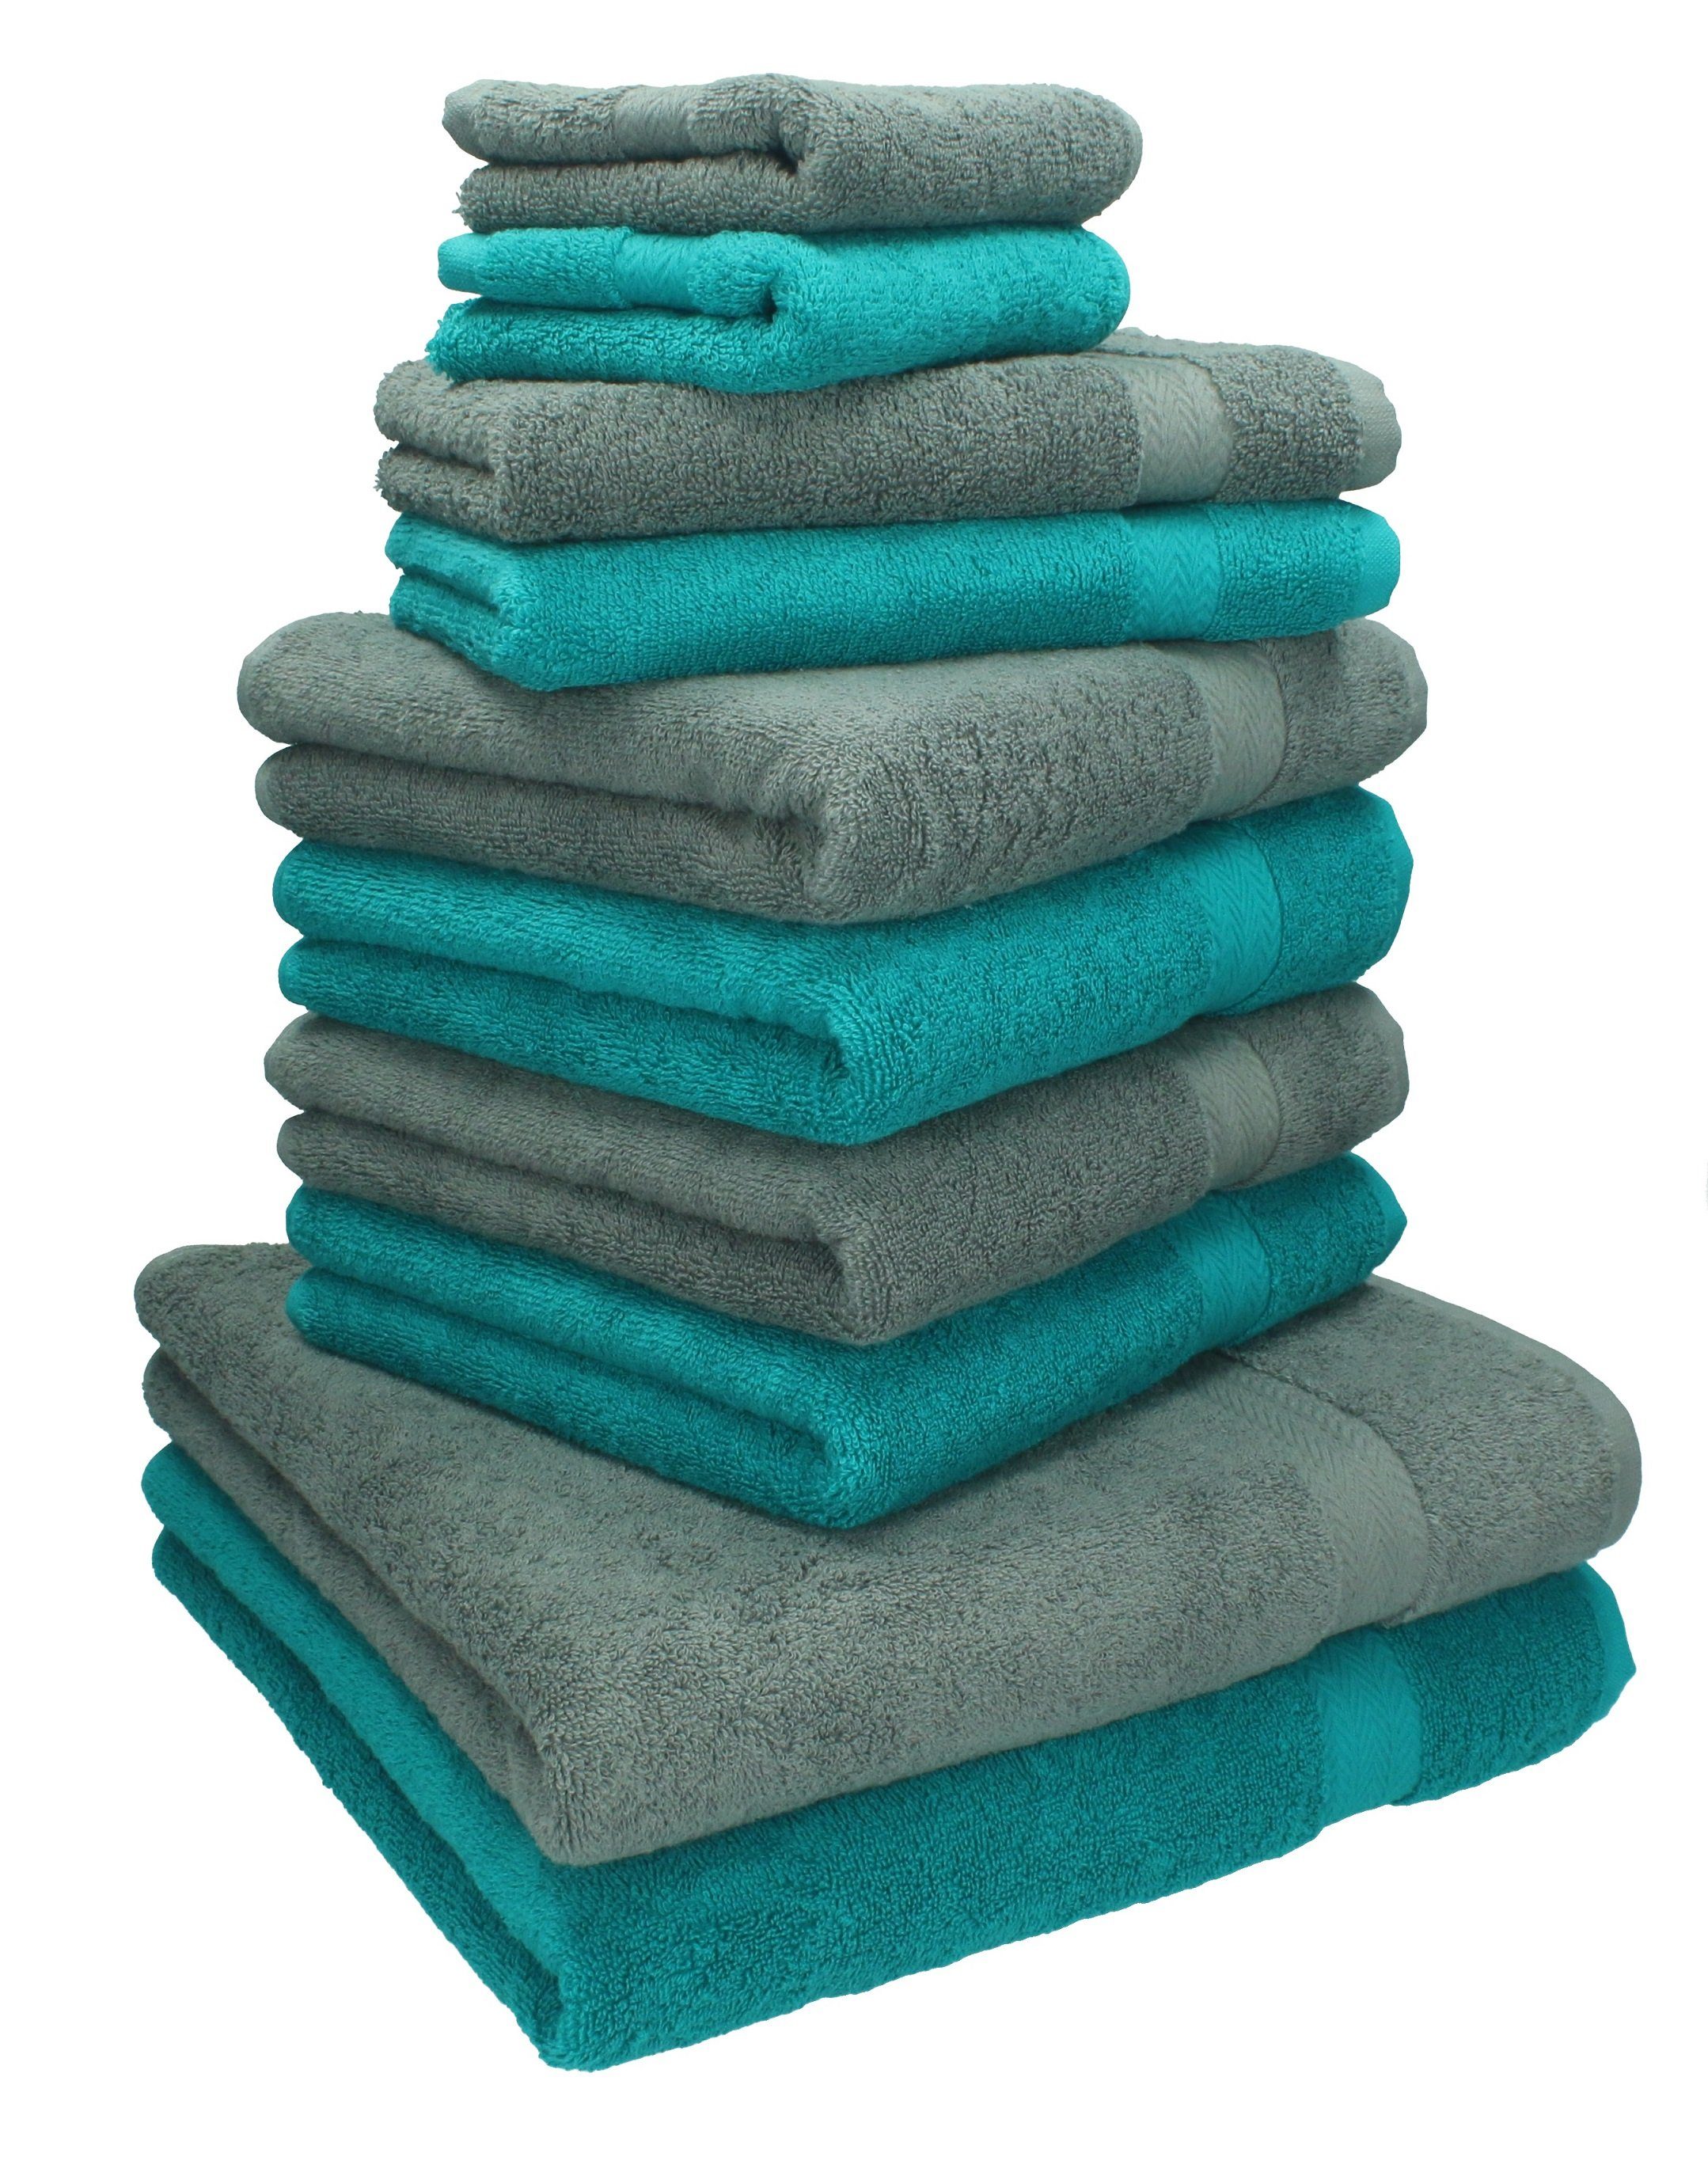 Betz Handtuch Set 10-TLG. Handtuch-Set Classic Farbe smaragdgrün und anthrazitgrau, 100% Baumwolle